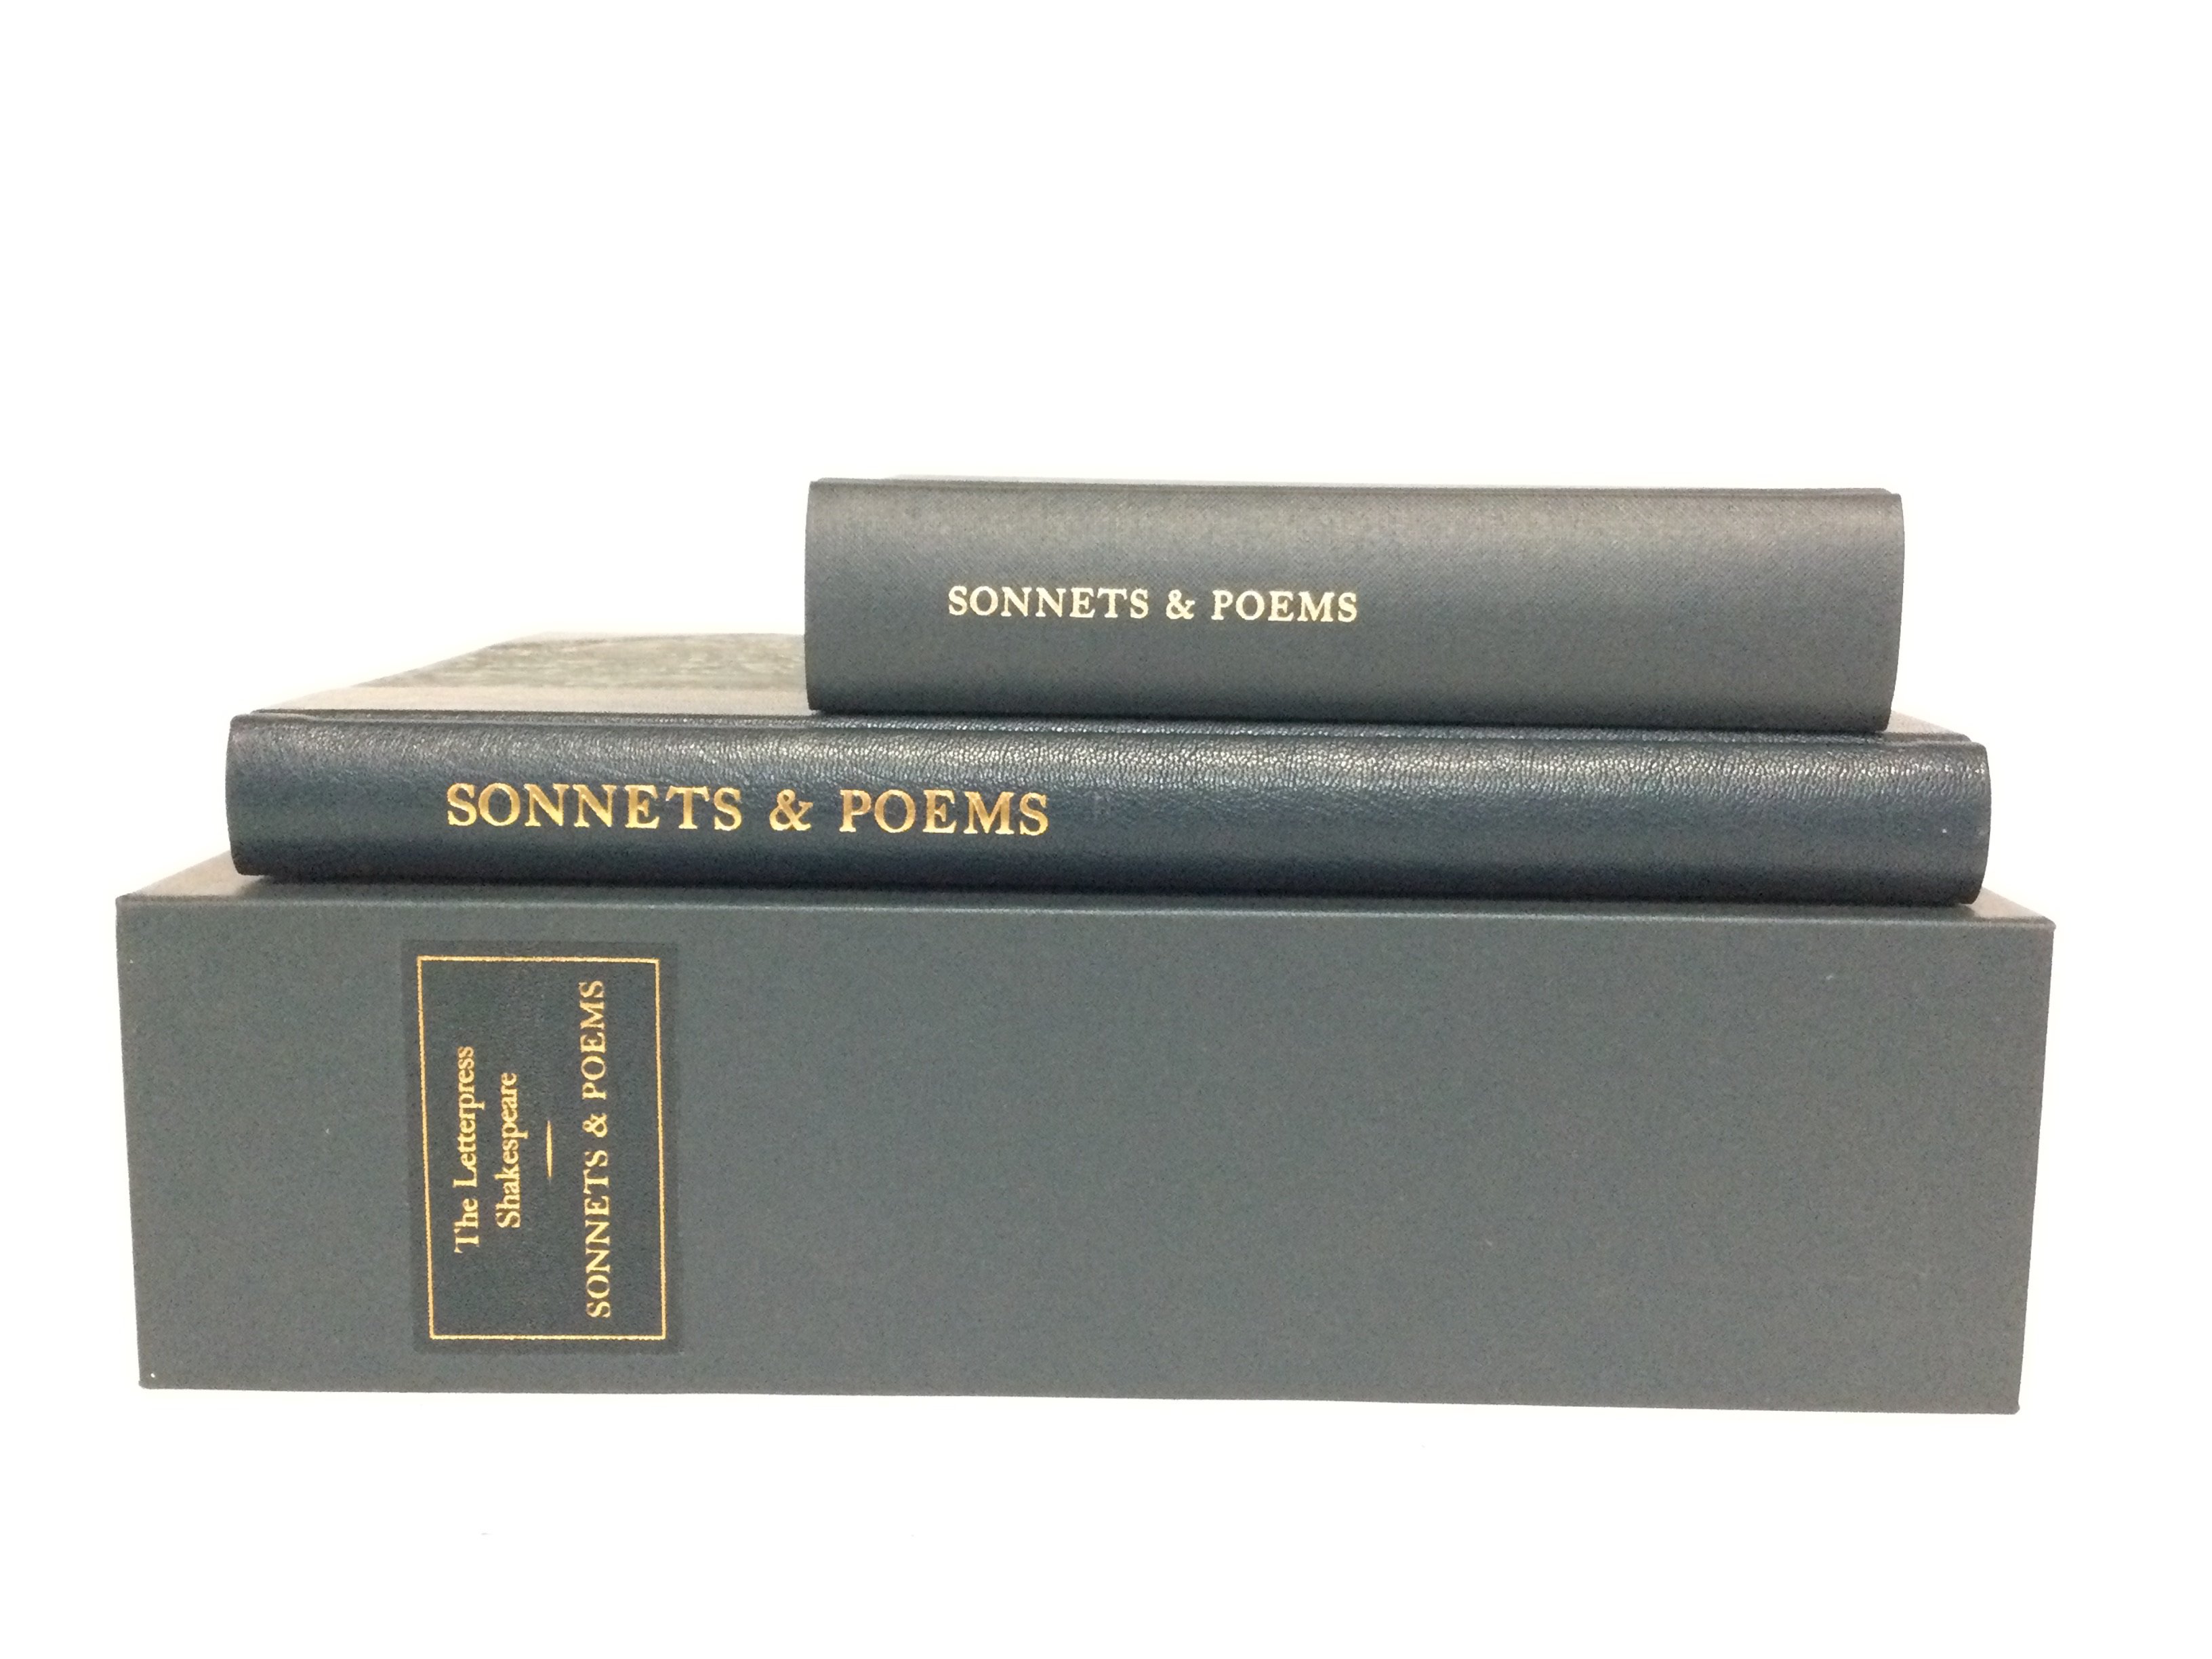 The letterpress Shakespeare, Sonnets & Poems